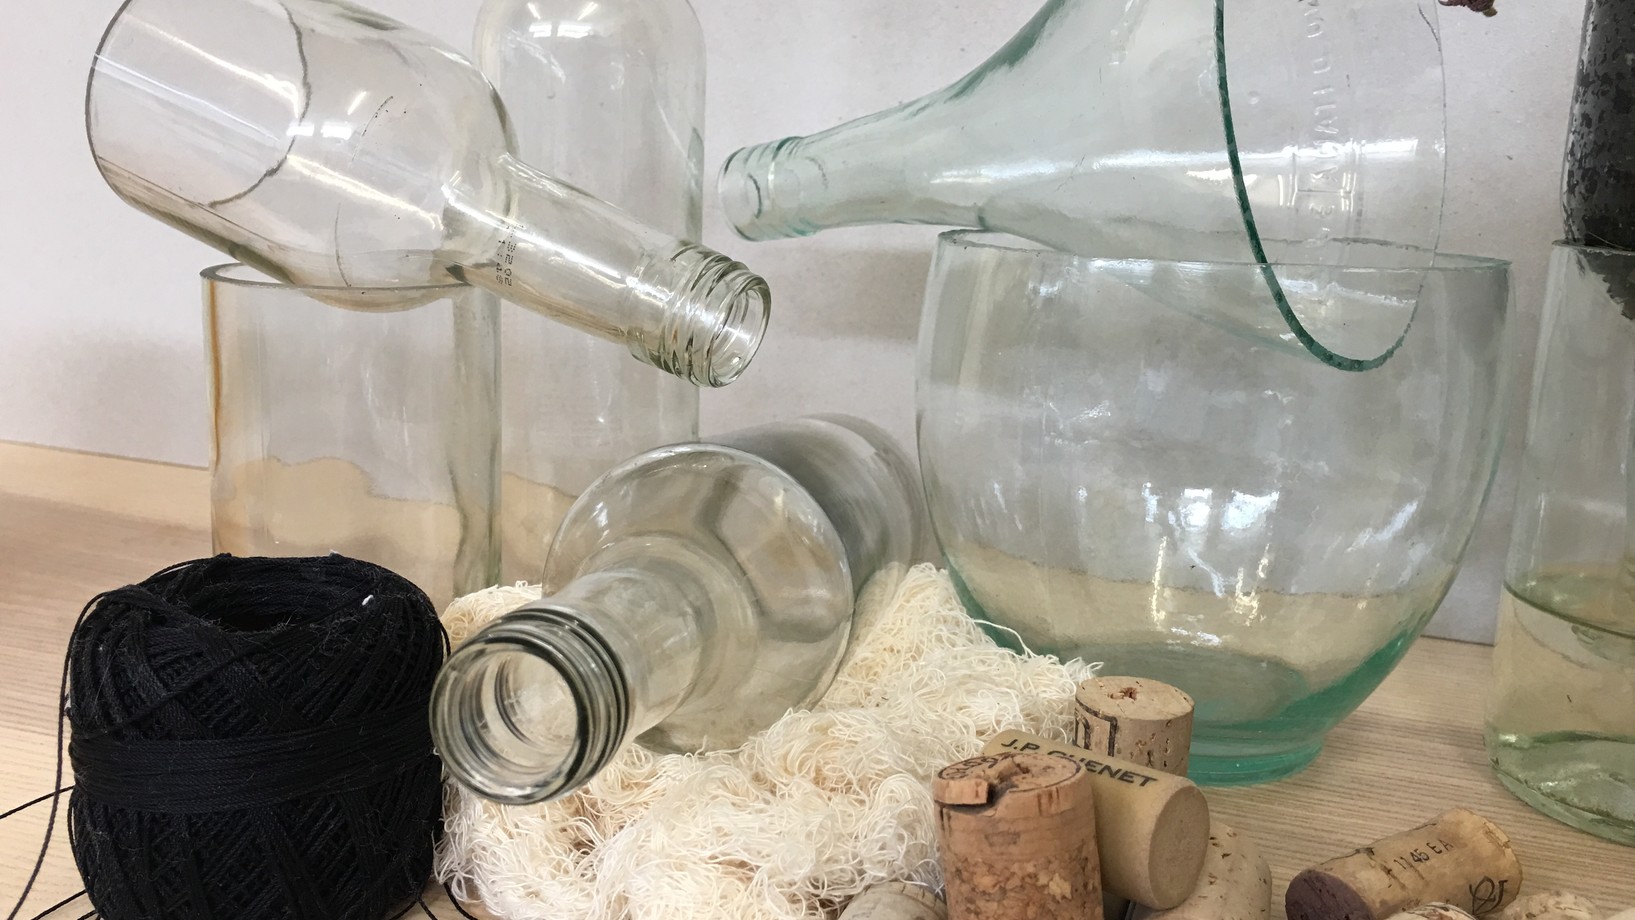 Glas, Kork und Stoff: Materialien zum Upcyceln am Workshop des Tüftelwerks.